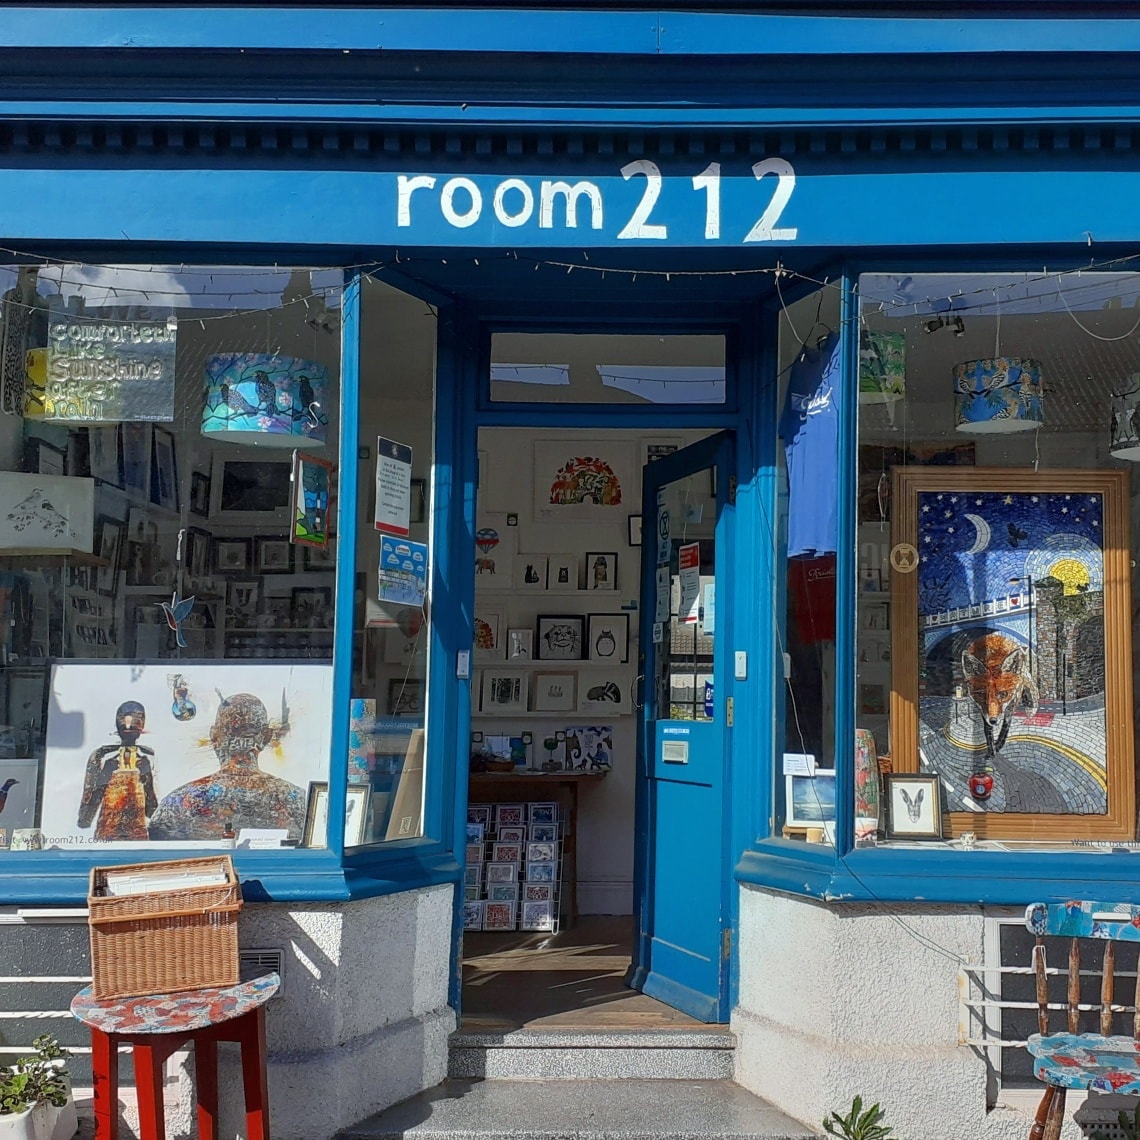 Find Room 212 in BS7: 212 Gloucester Road, Bishopston